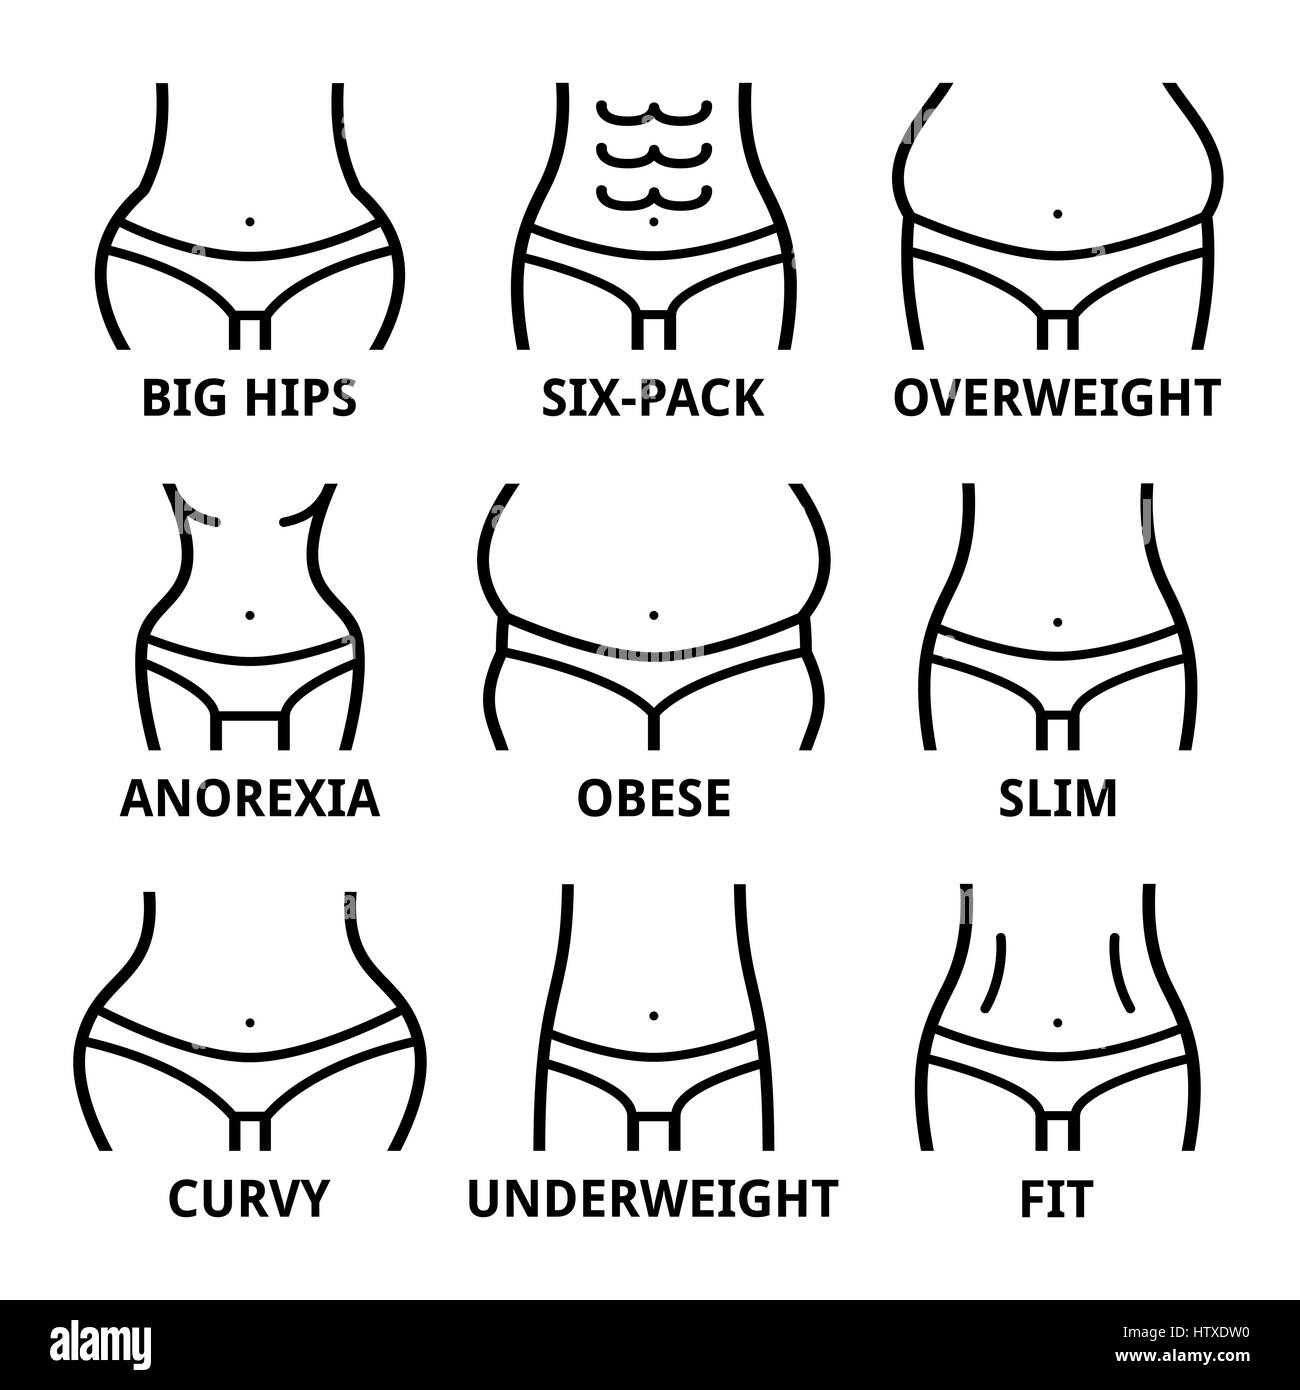 La forme du corps féminin - mettre en place, de grandes hanches, obésité, surpoids, slim, anorexie, six-pack, obésité, graisse, forme courbe Illustration de Vecteur